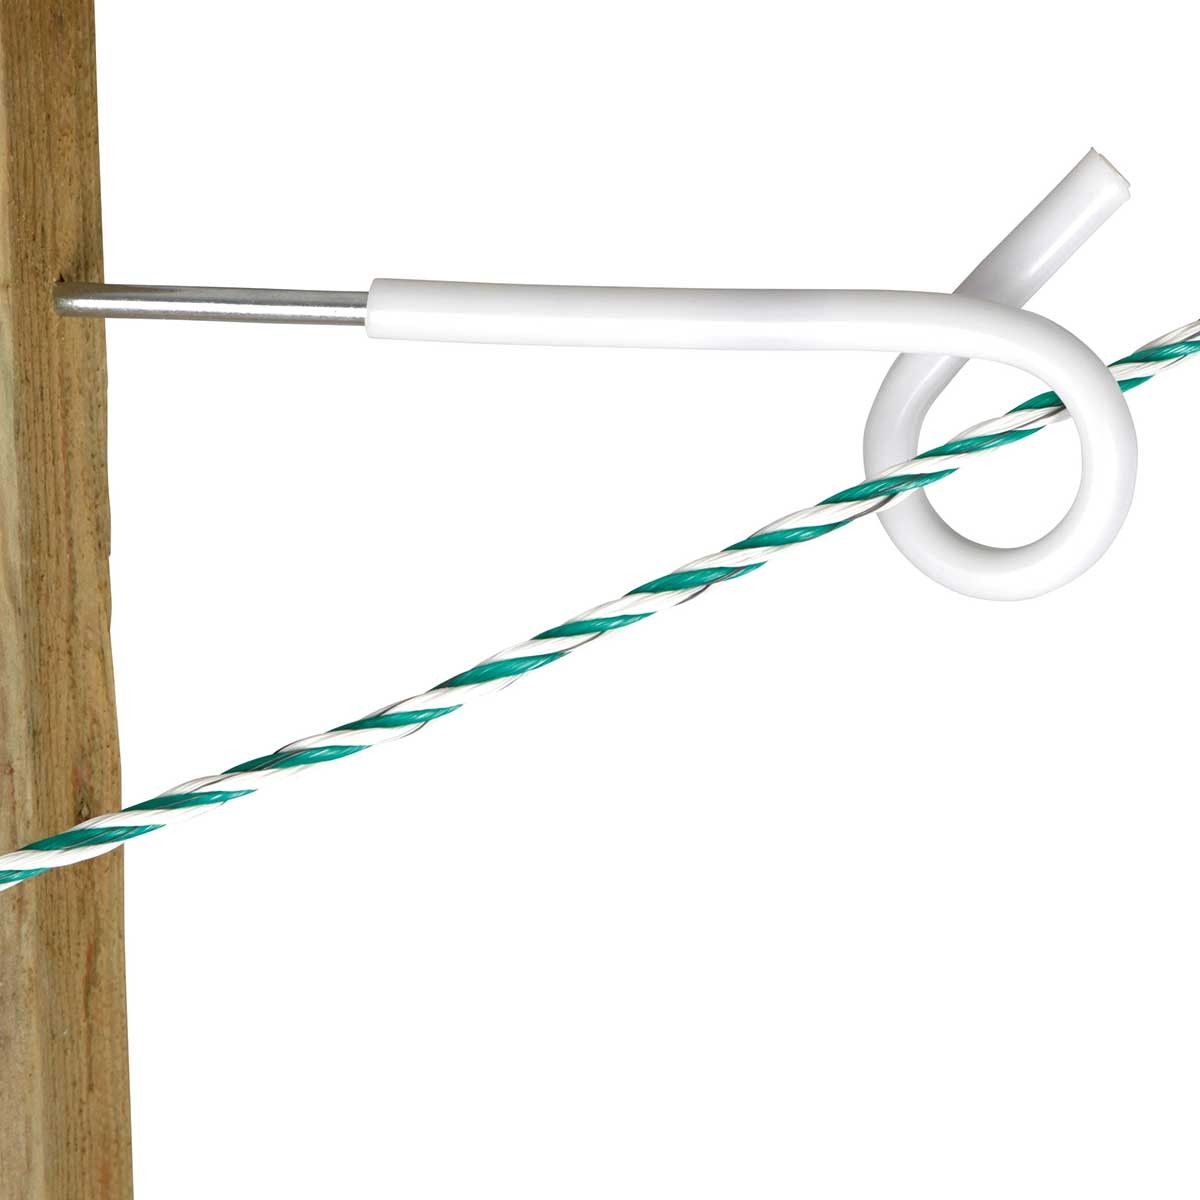 5x AKO isolatore a occhiello con gambo lungo per fili, corde e nastri 25 cm